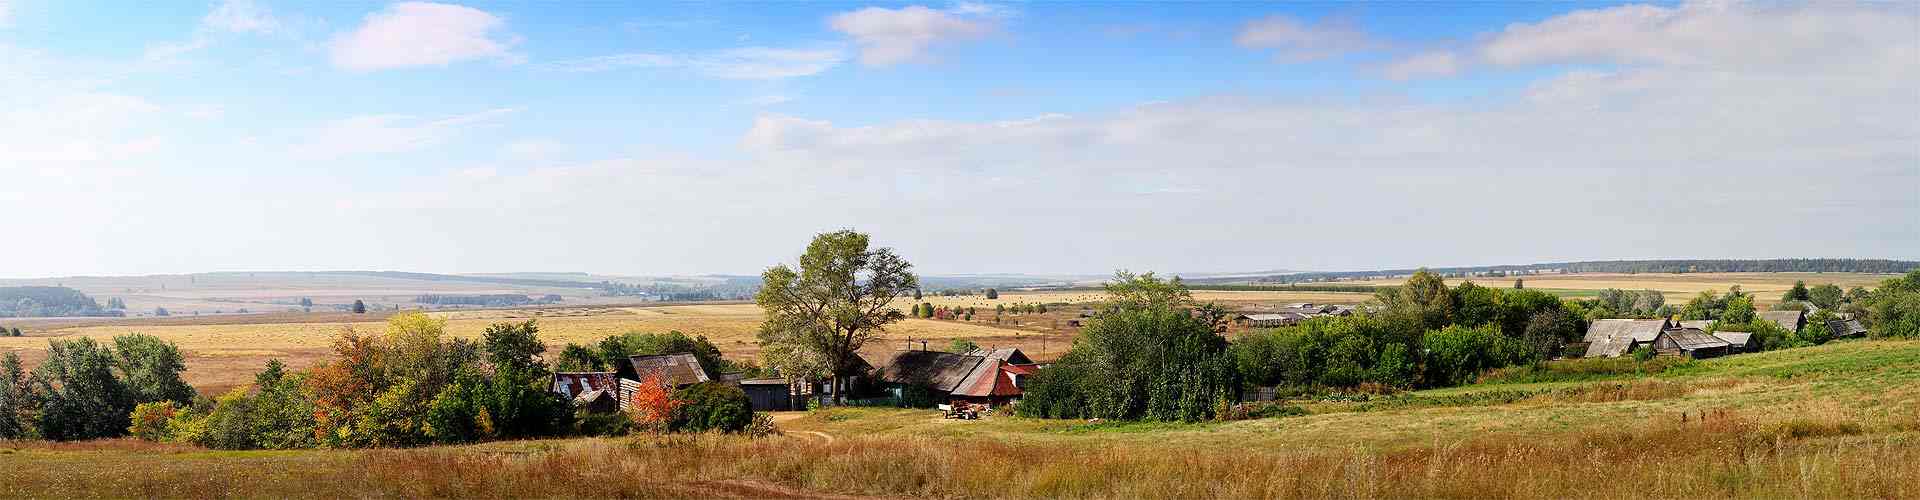 Casas rurales en Castilla - La Mancha
           
           


          
          
          

